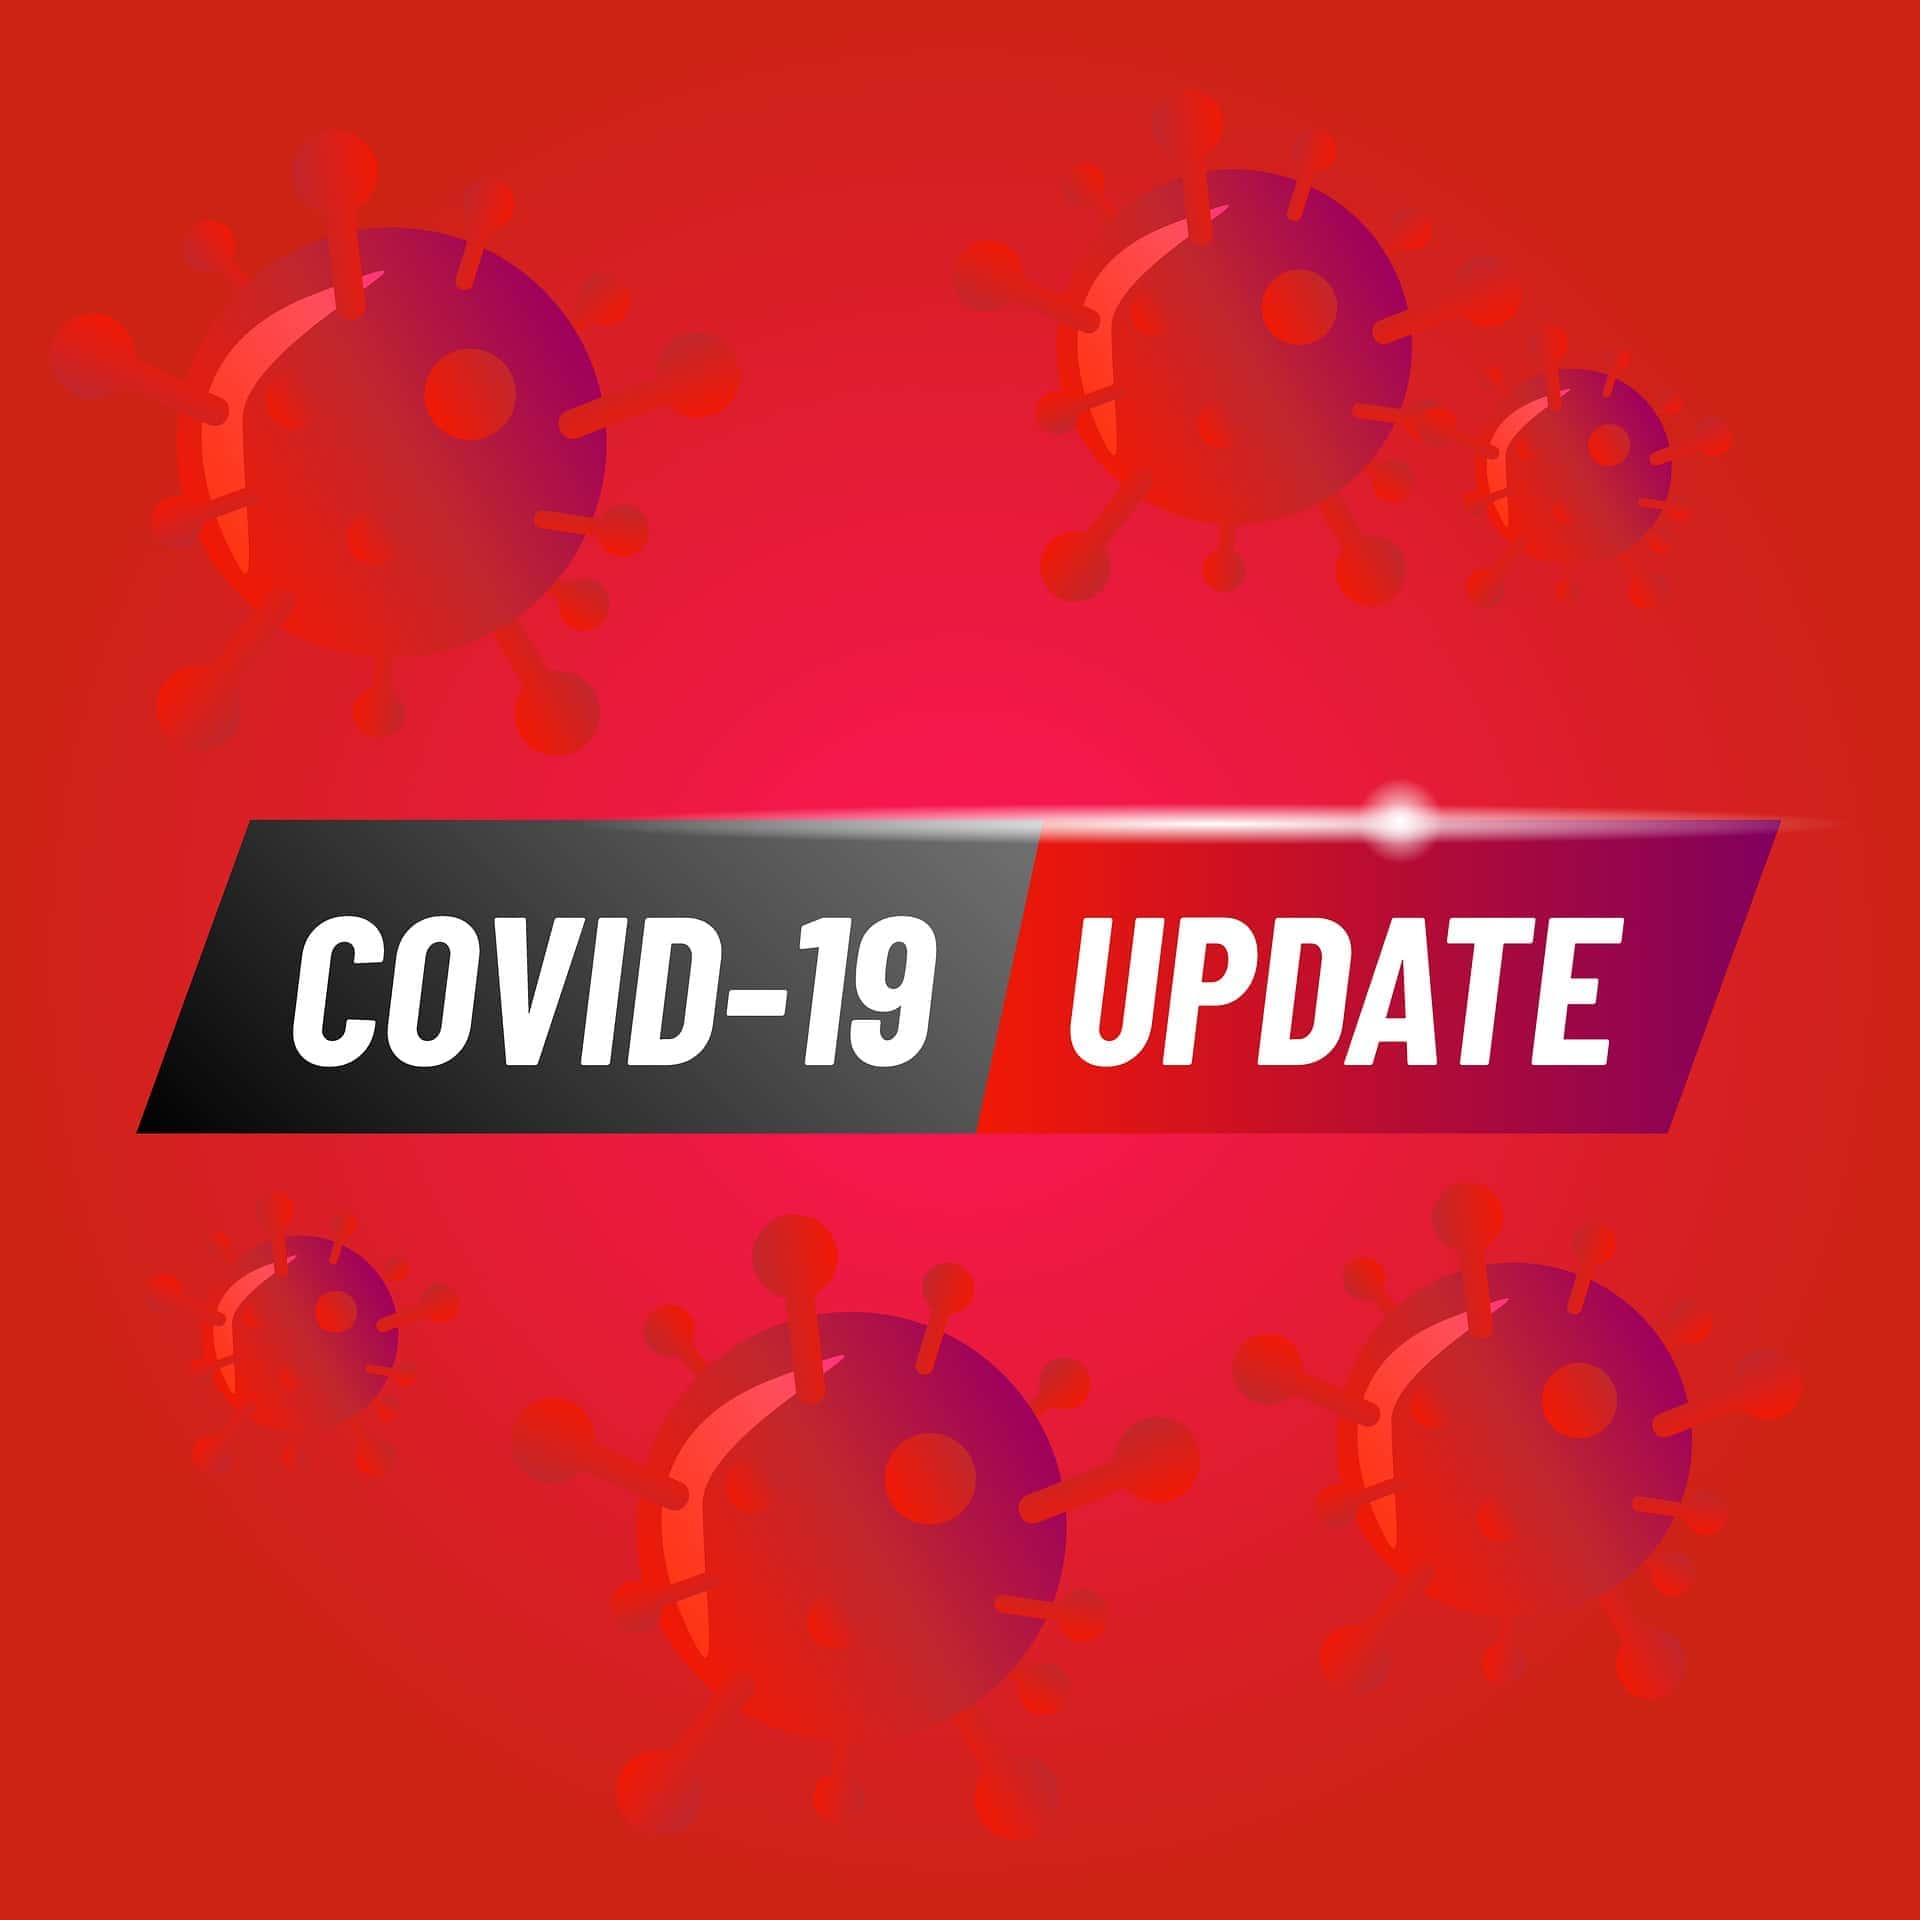 coronavirus-update-jpg-33